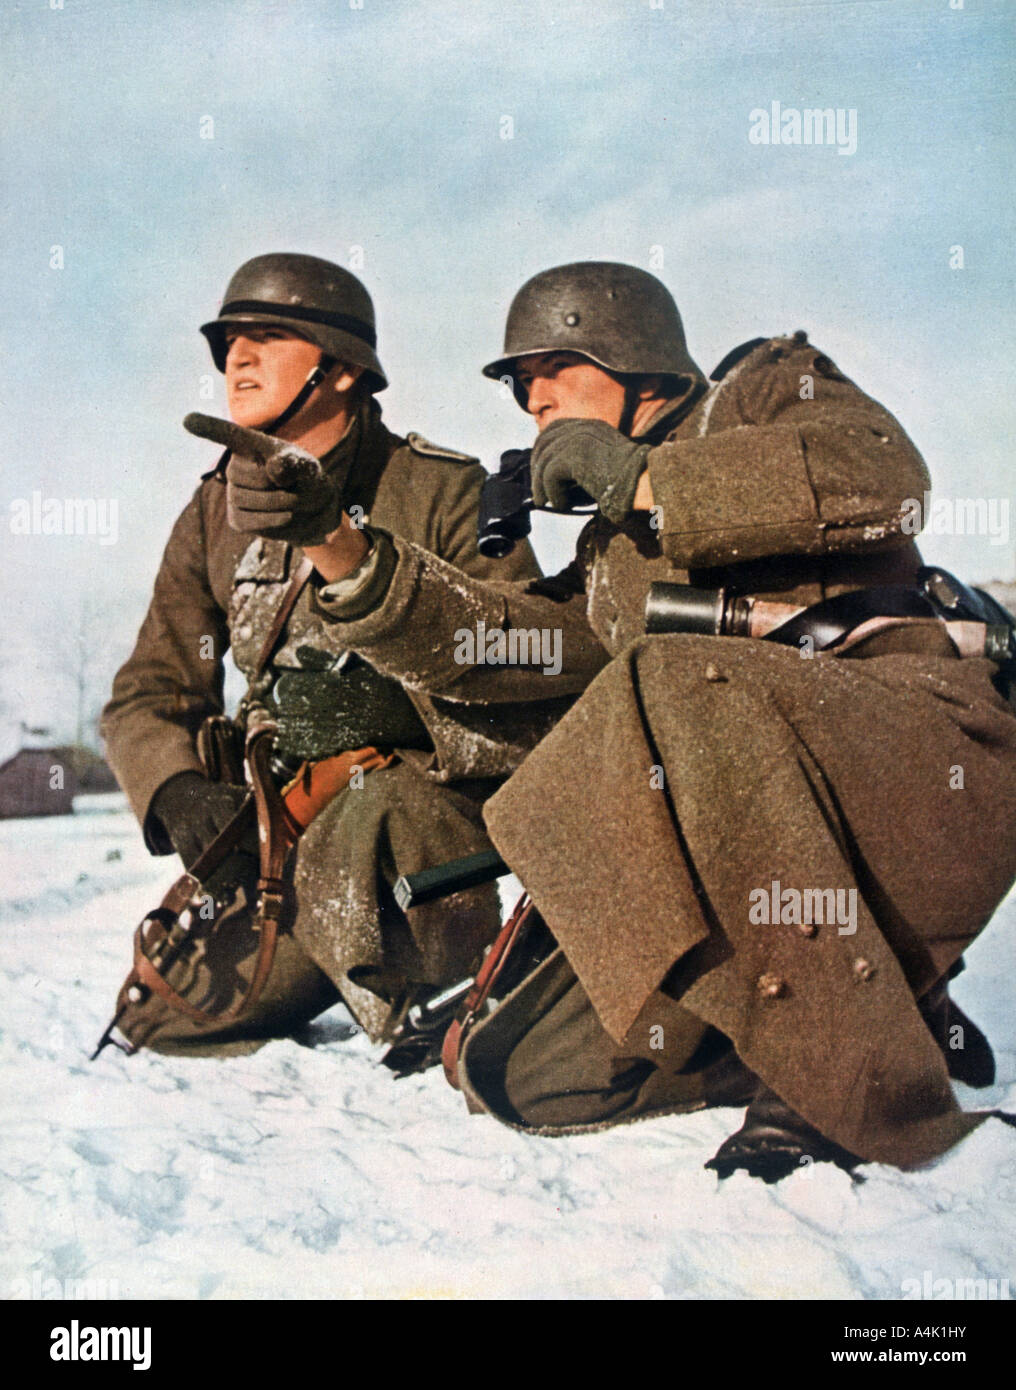 Les soldats allemands, la seconde guerre mondiale, 1942. Artiste : Grimm Banque D'Images